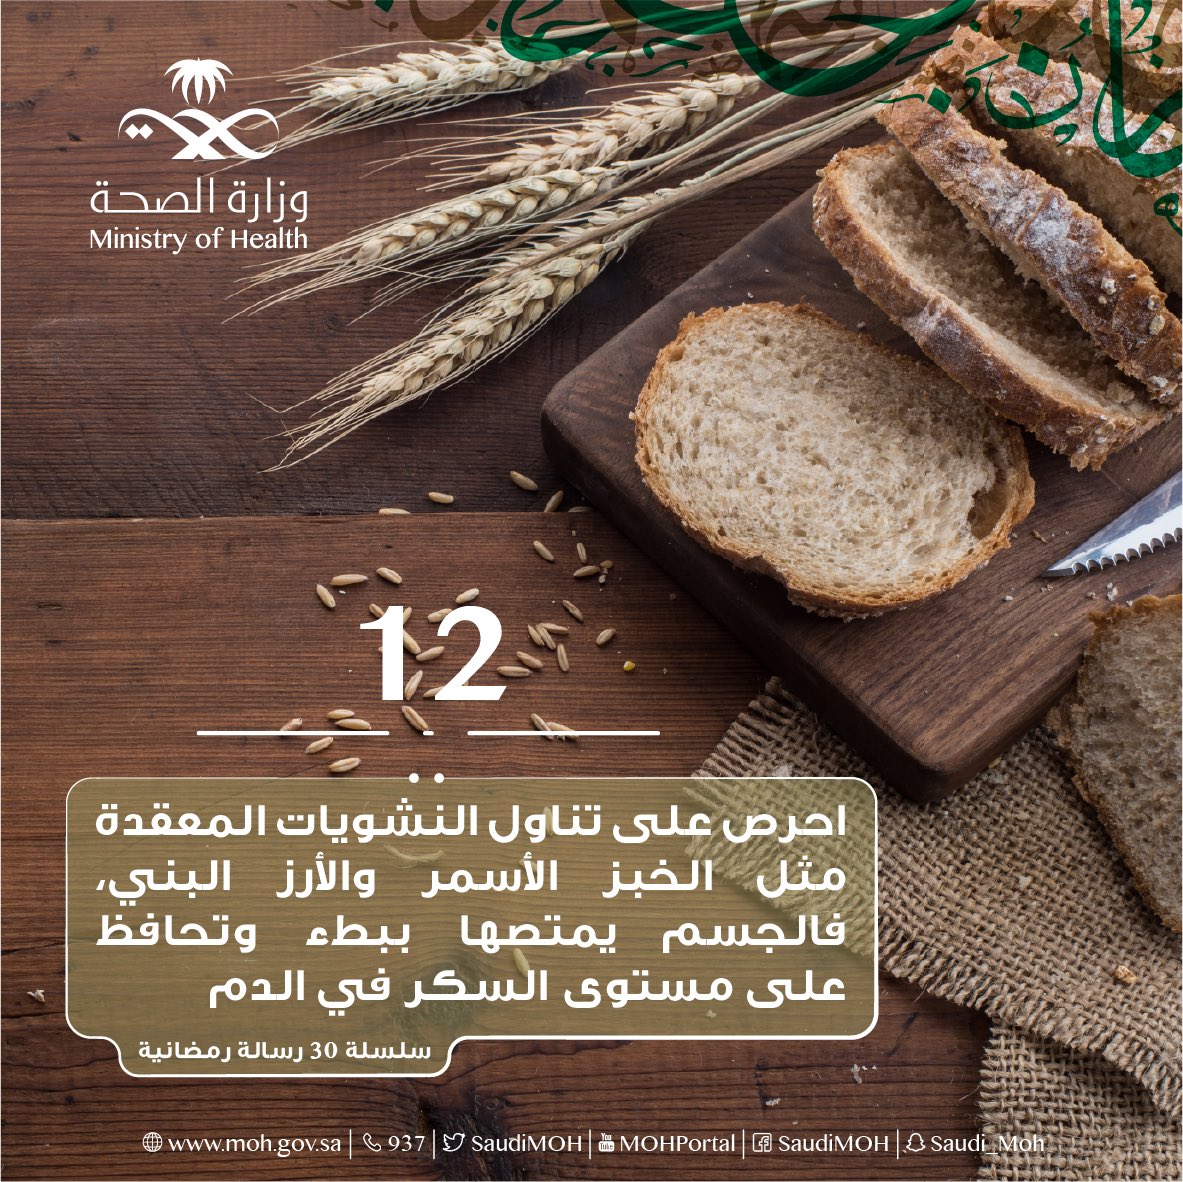 نصيحة رمضانية.. تناولوا الخبز الأسمر والأرز البني